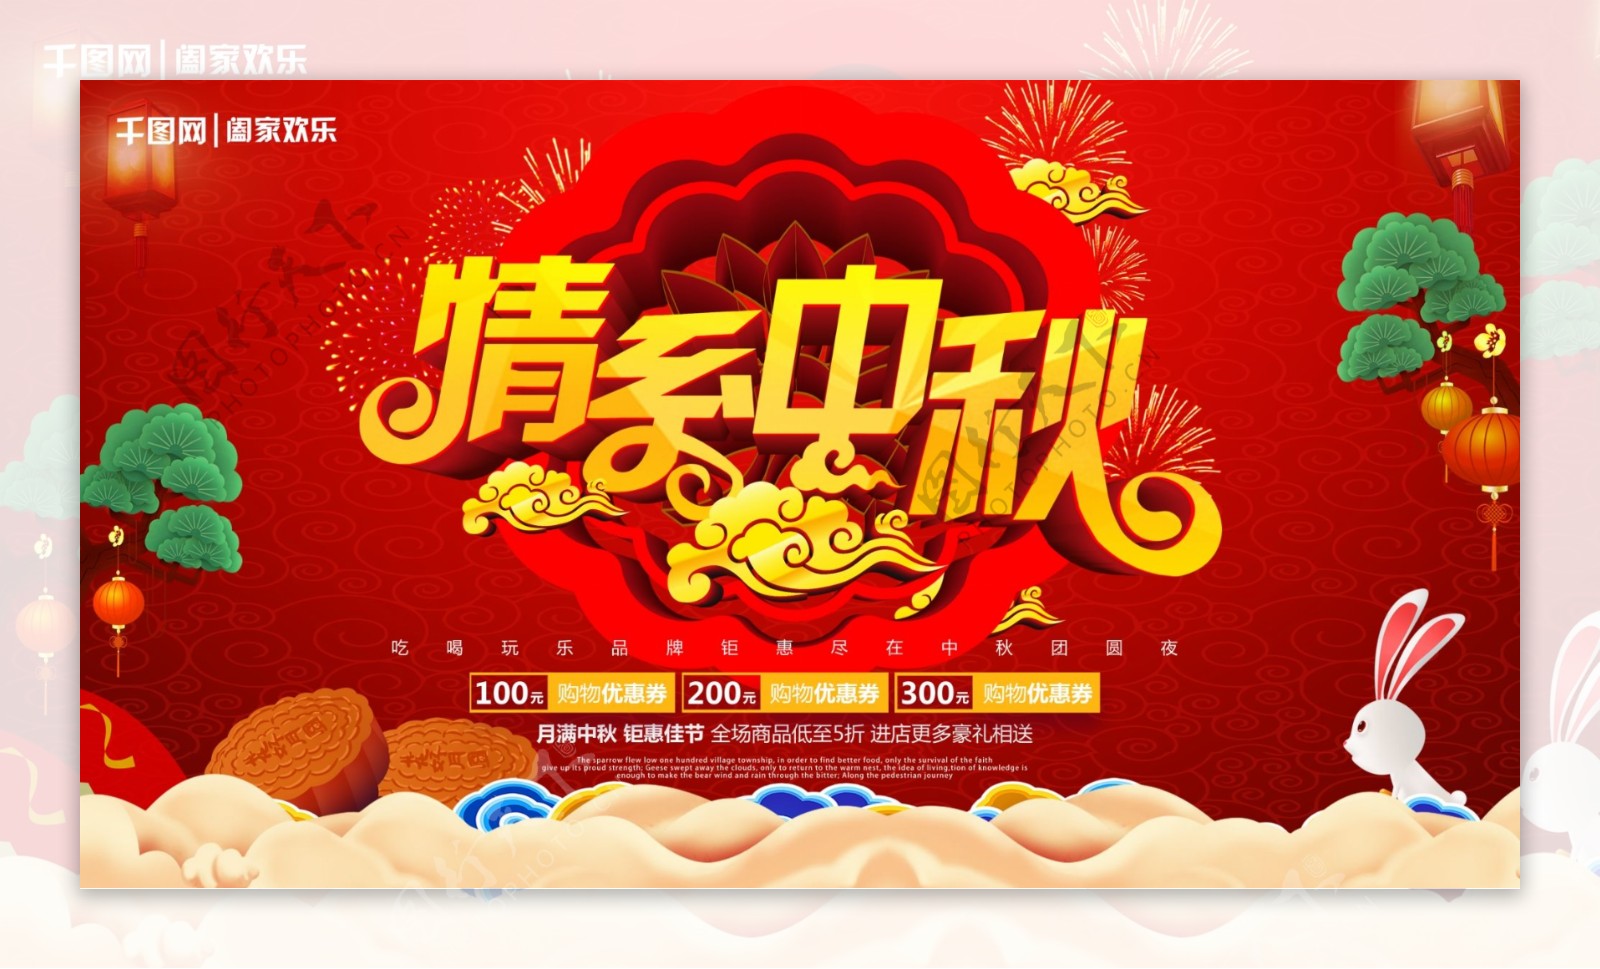 红色大气微立体中国传统节日情系中秋海报